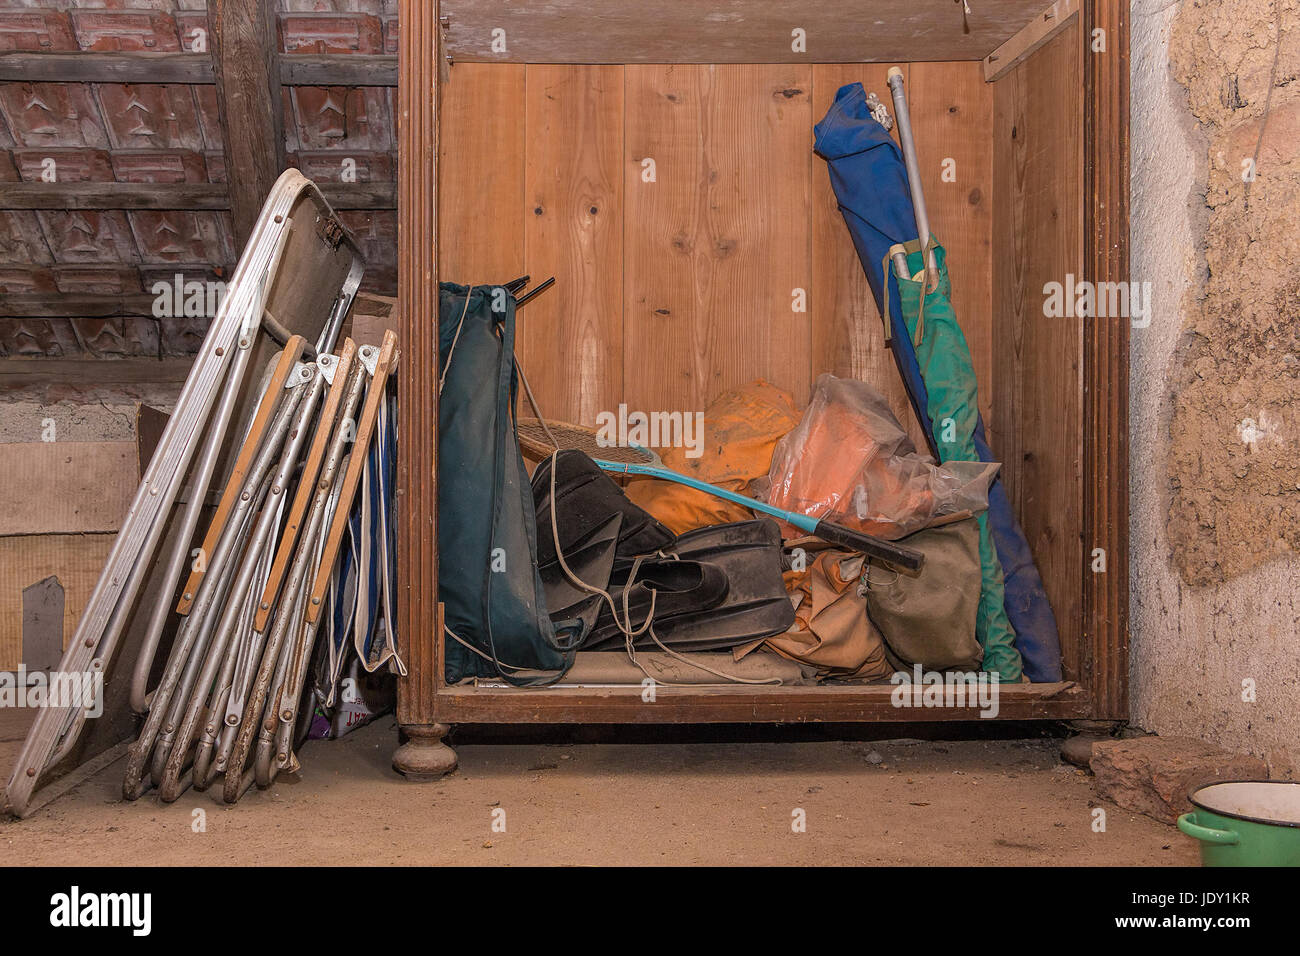 Vieux, sale et l'équipement de camping grunge stockés dans un grenier de la vieille maison de campagne. Banque D'Images